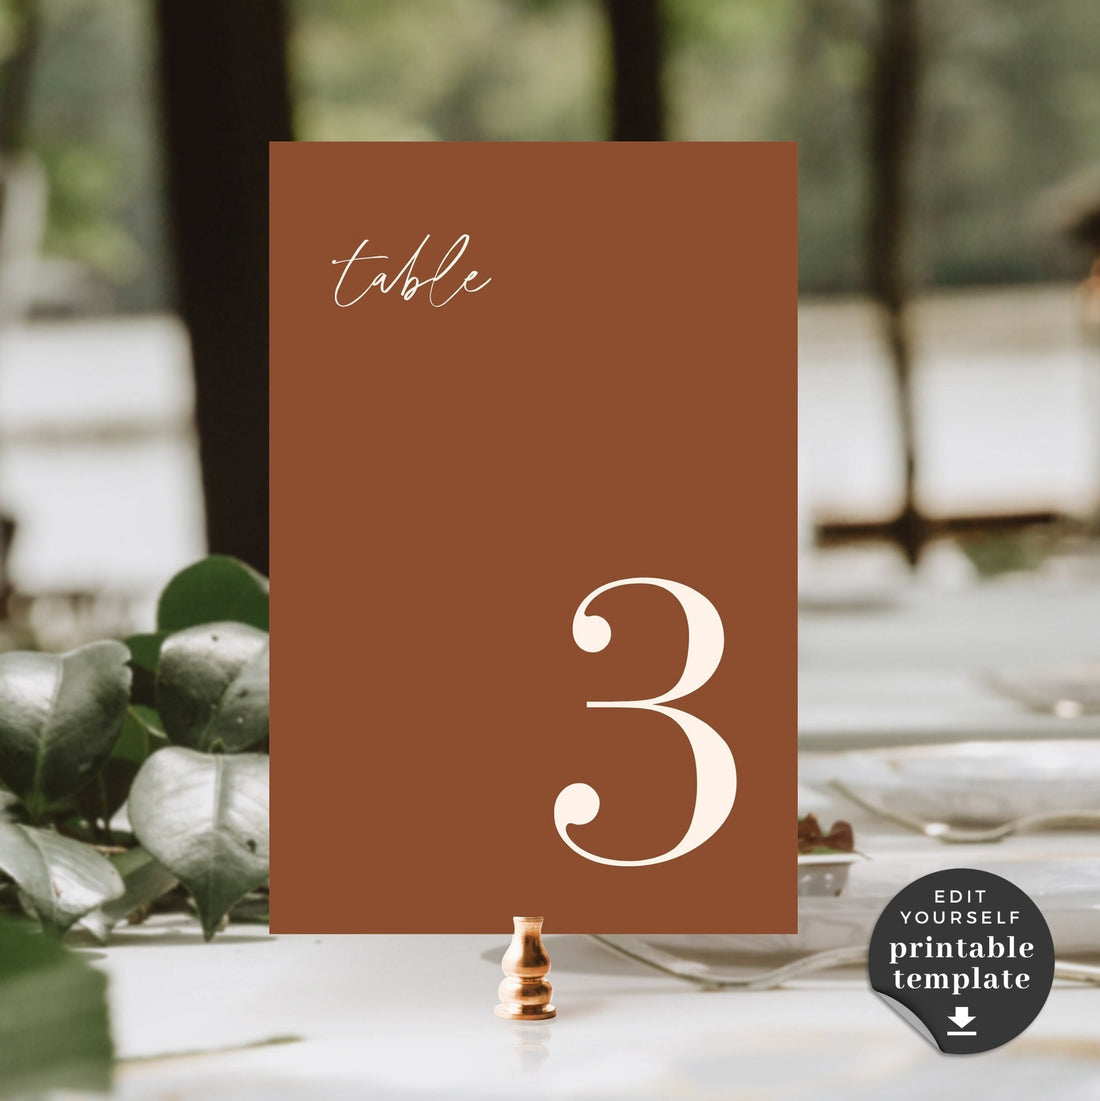 SIENNA Terracotta Table Numbers Wedding Printable